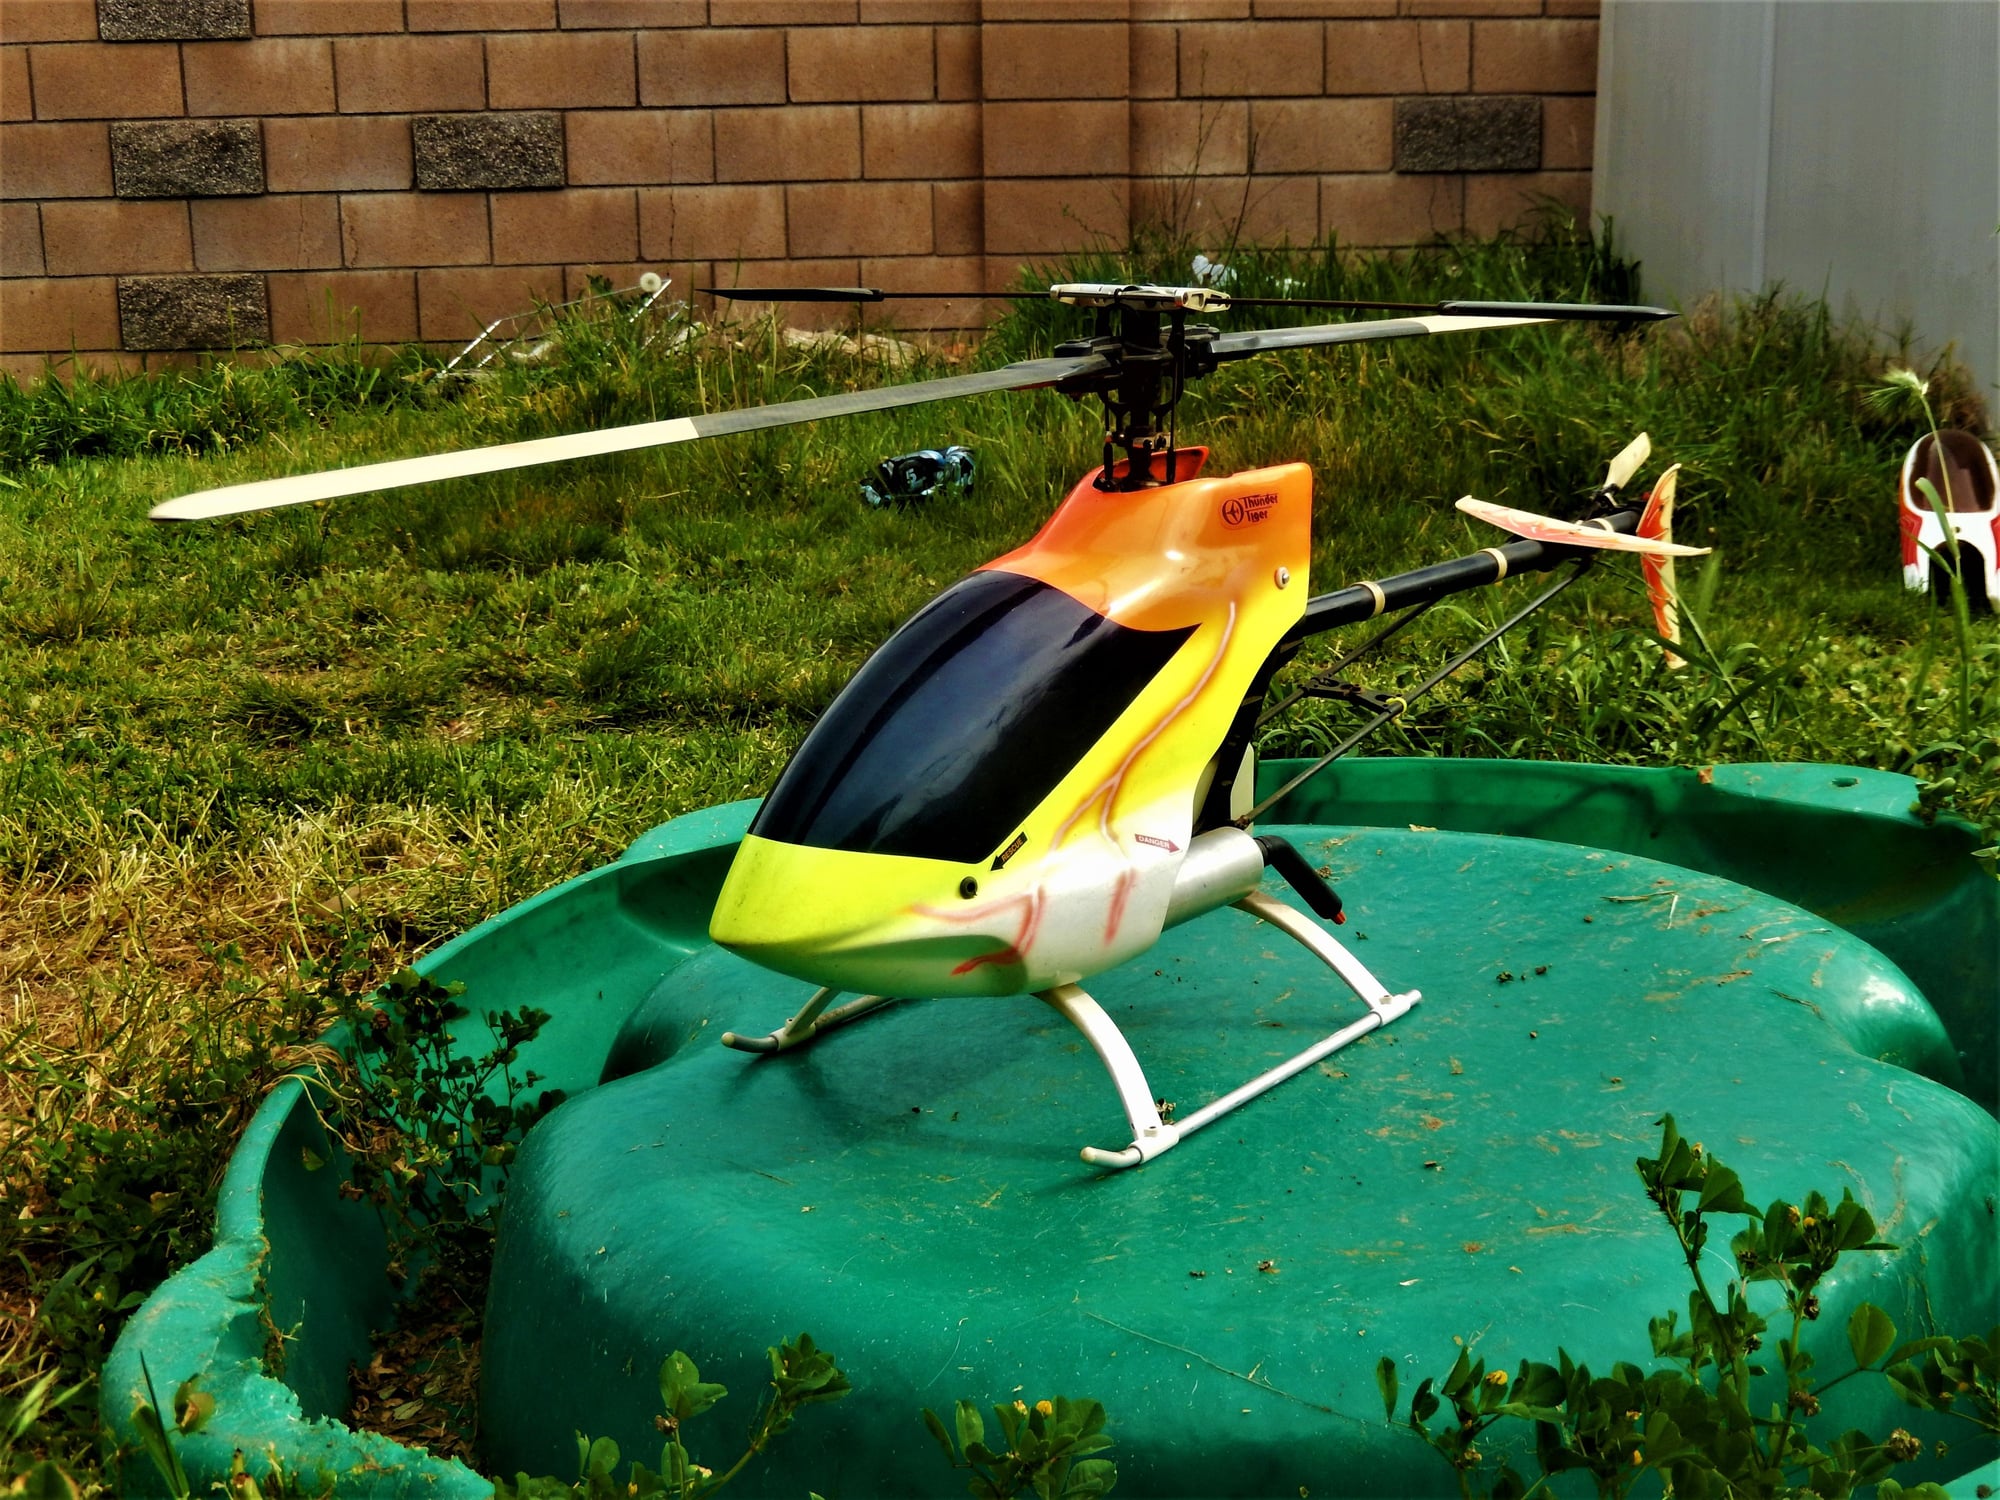 raptor v2 helicopter